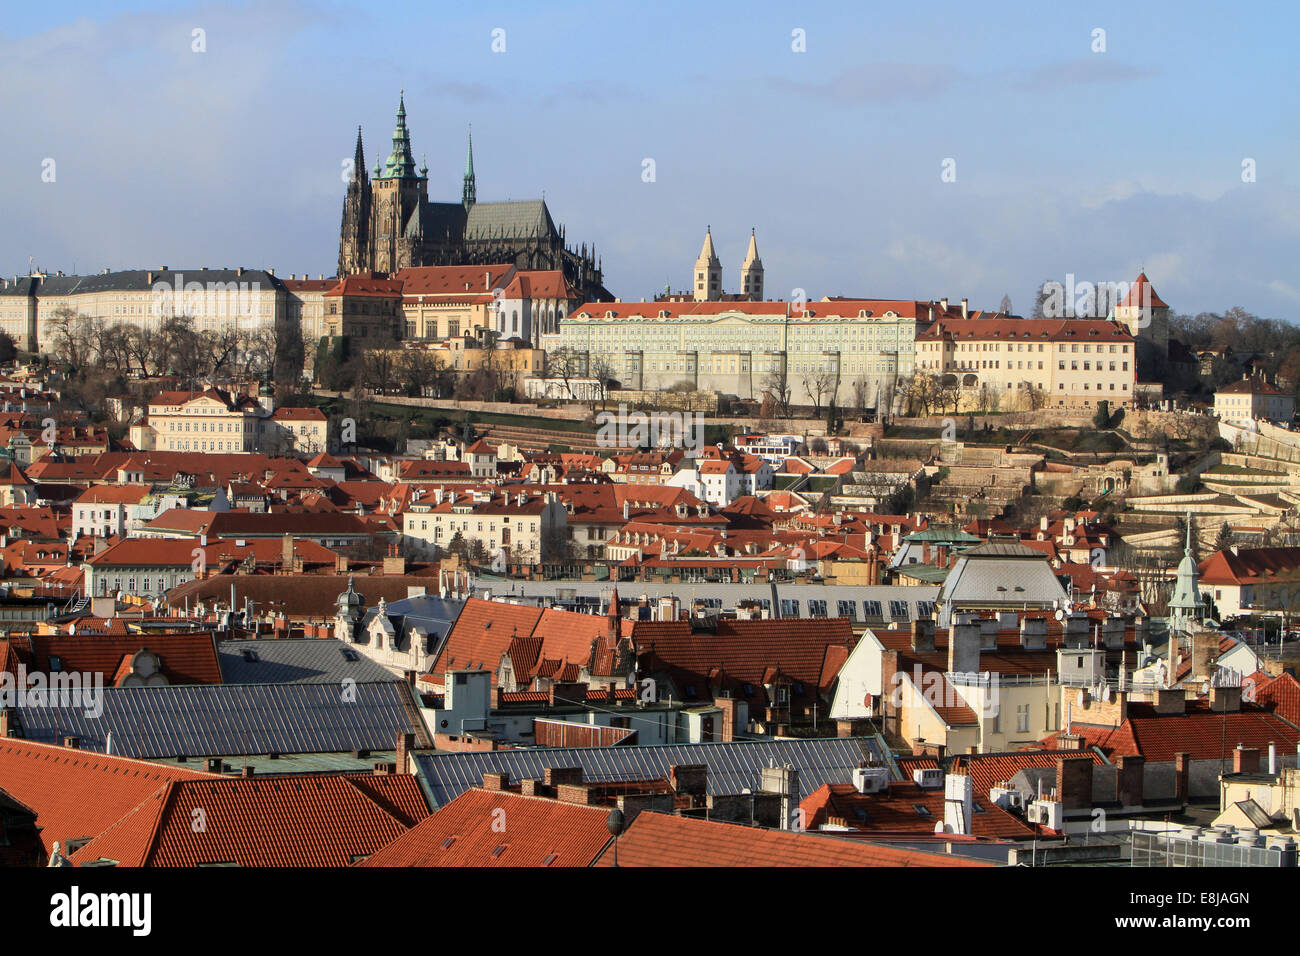 Hradcany. District de Château de Prague et cathédrale Saint-Guy. Le centre-ville. Prague. Banque D'Images